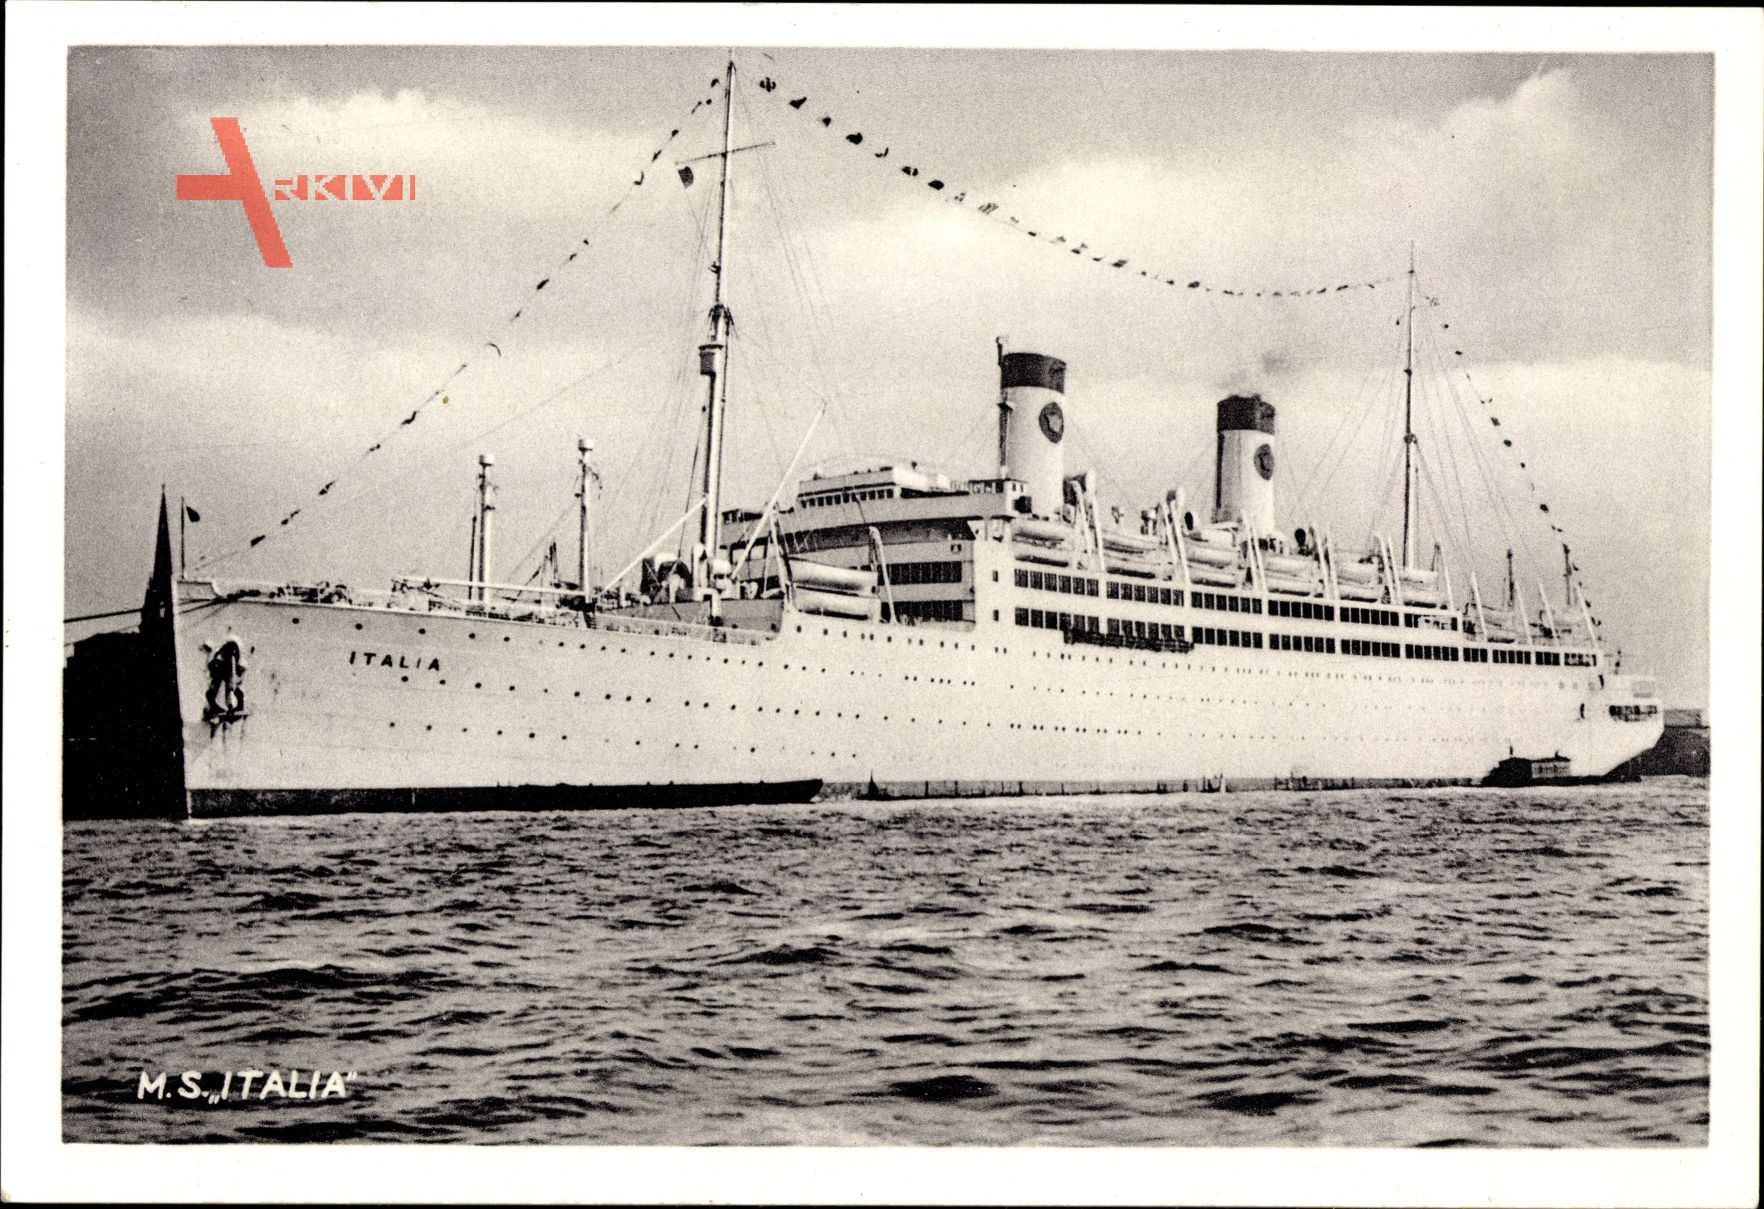 Dampfschiff M.S. Italia, Home Lines, Vor Anker im Hafen